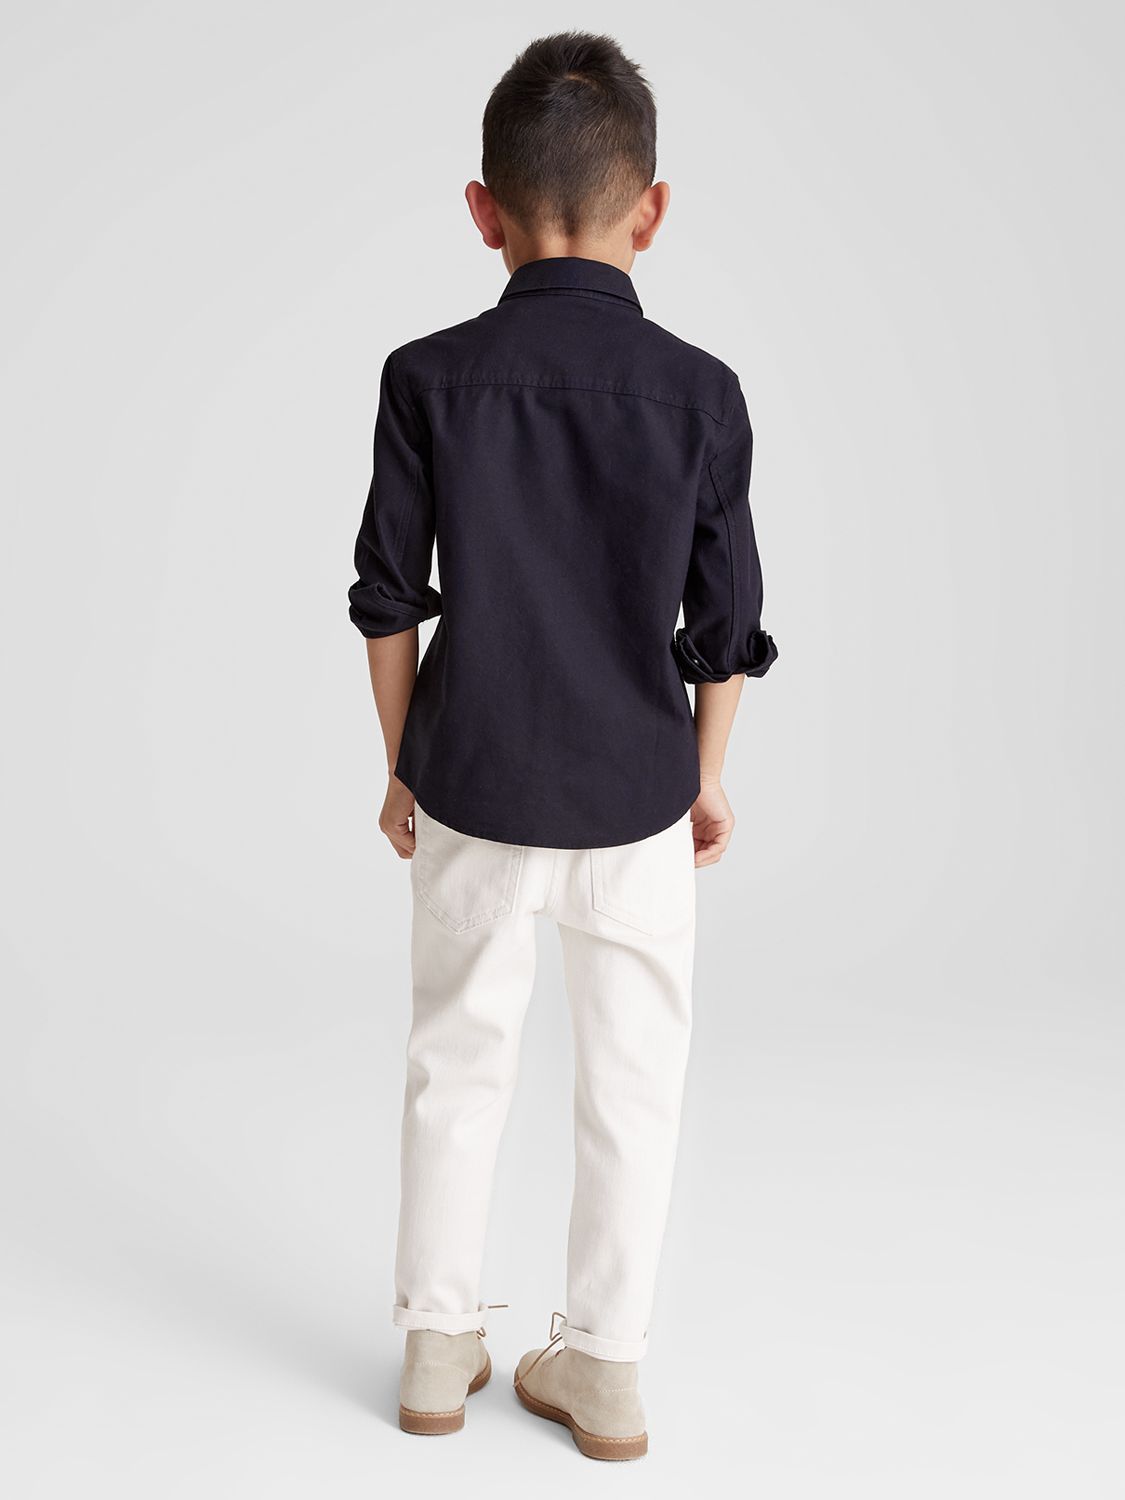 Reiss Kids' Greenwich Junior Shirt, Navy, 4-5 years